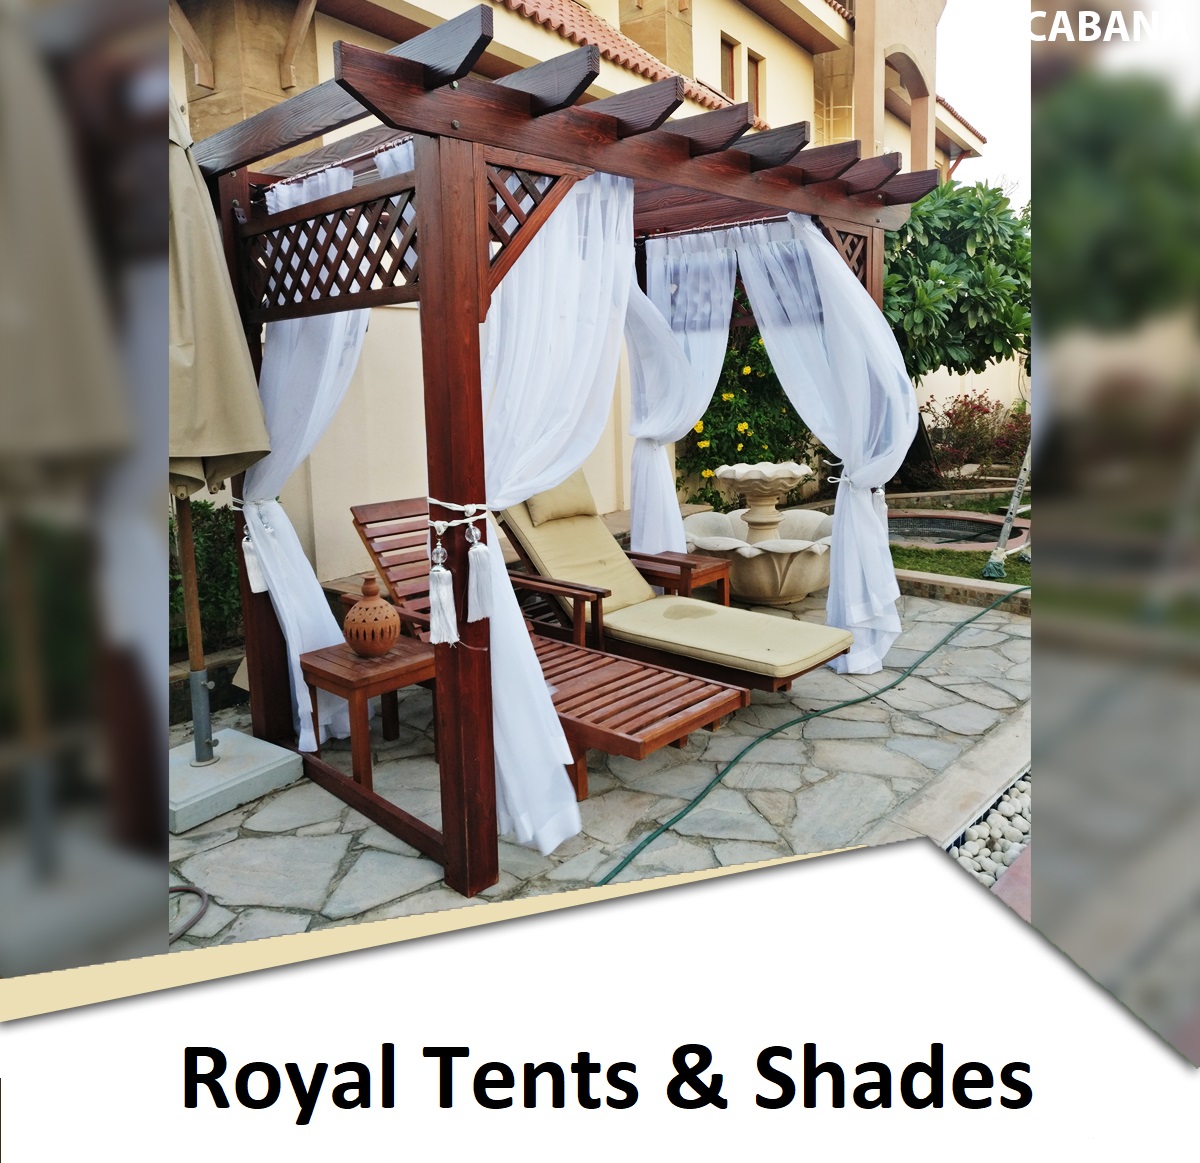 Cabana Royal Tents & Shades,